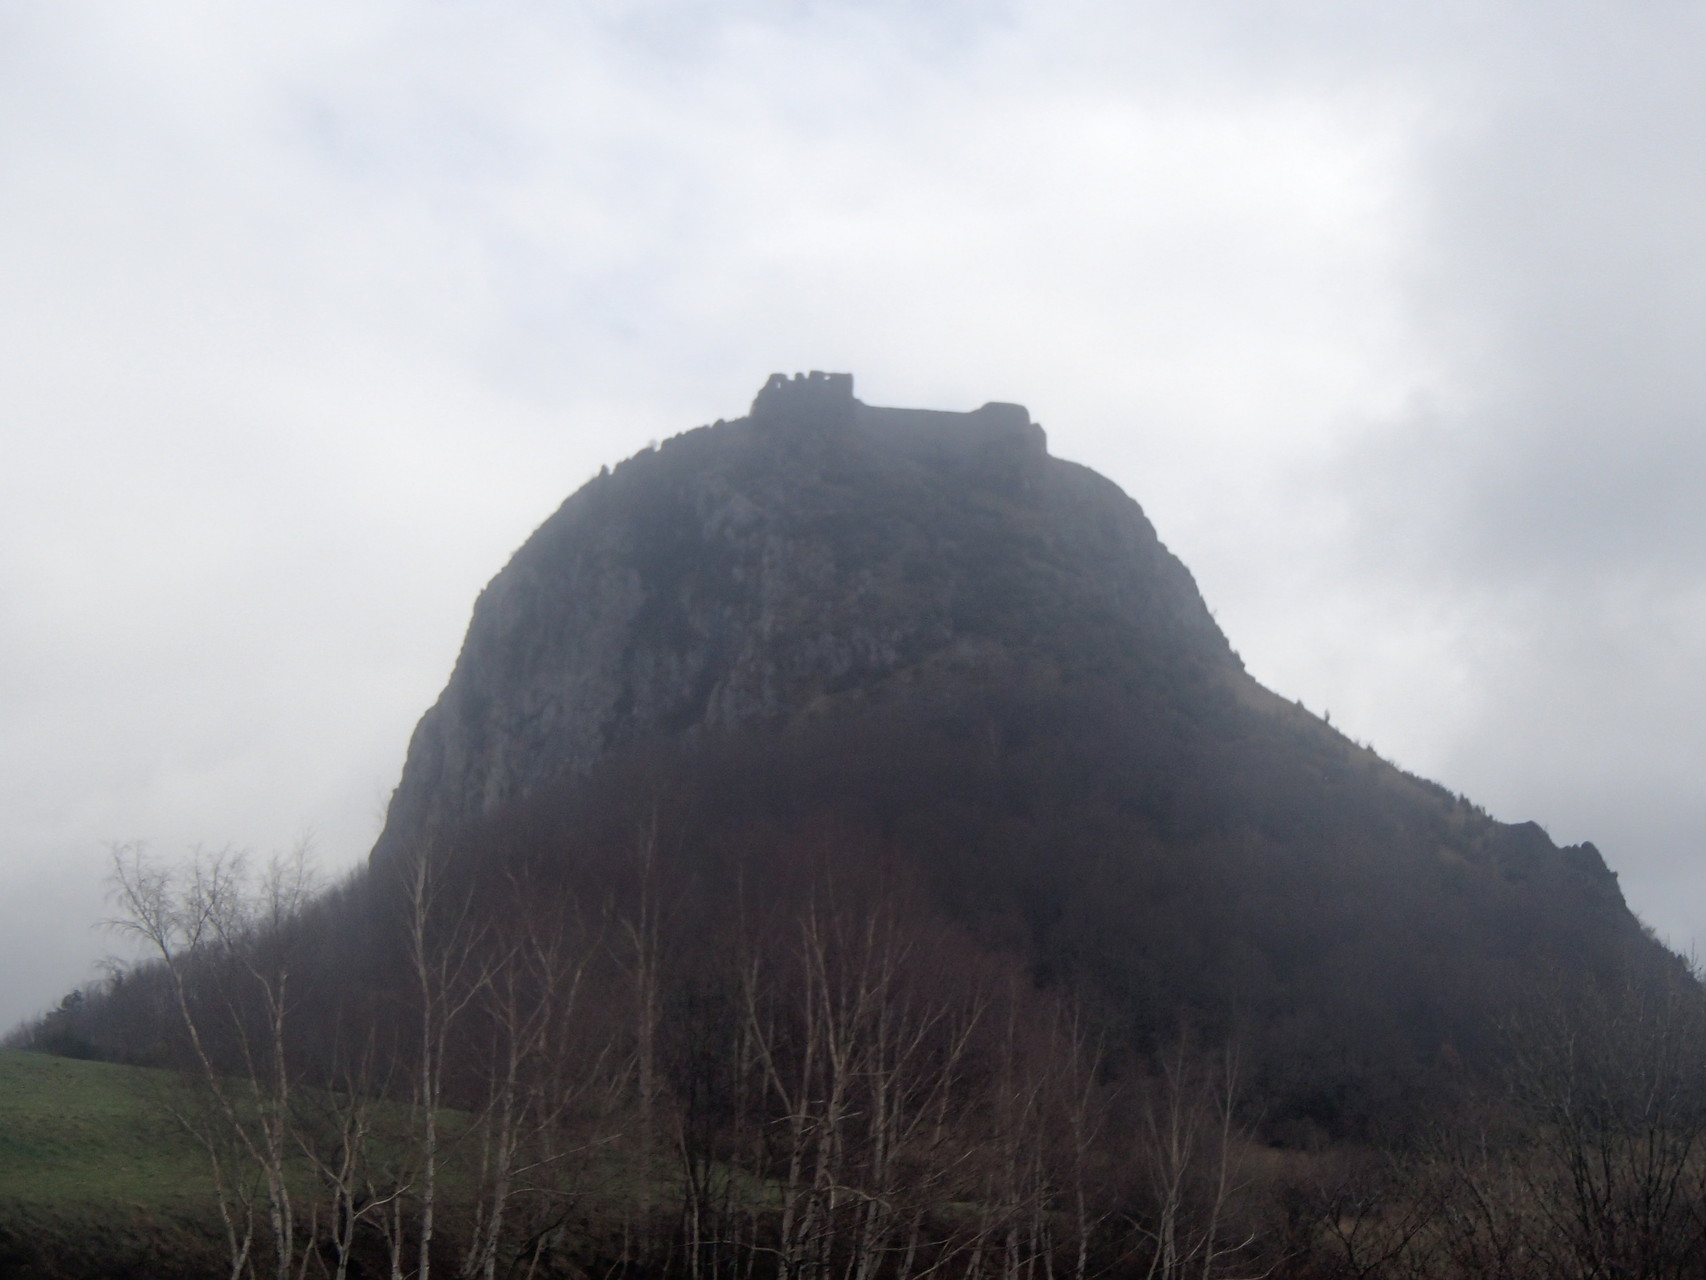 Am nächsten Tag folgte das Hauptziel: Die Burgruine von Montsegur